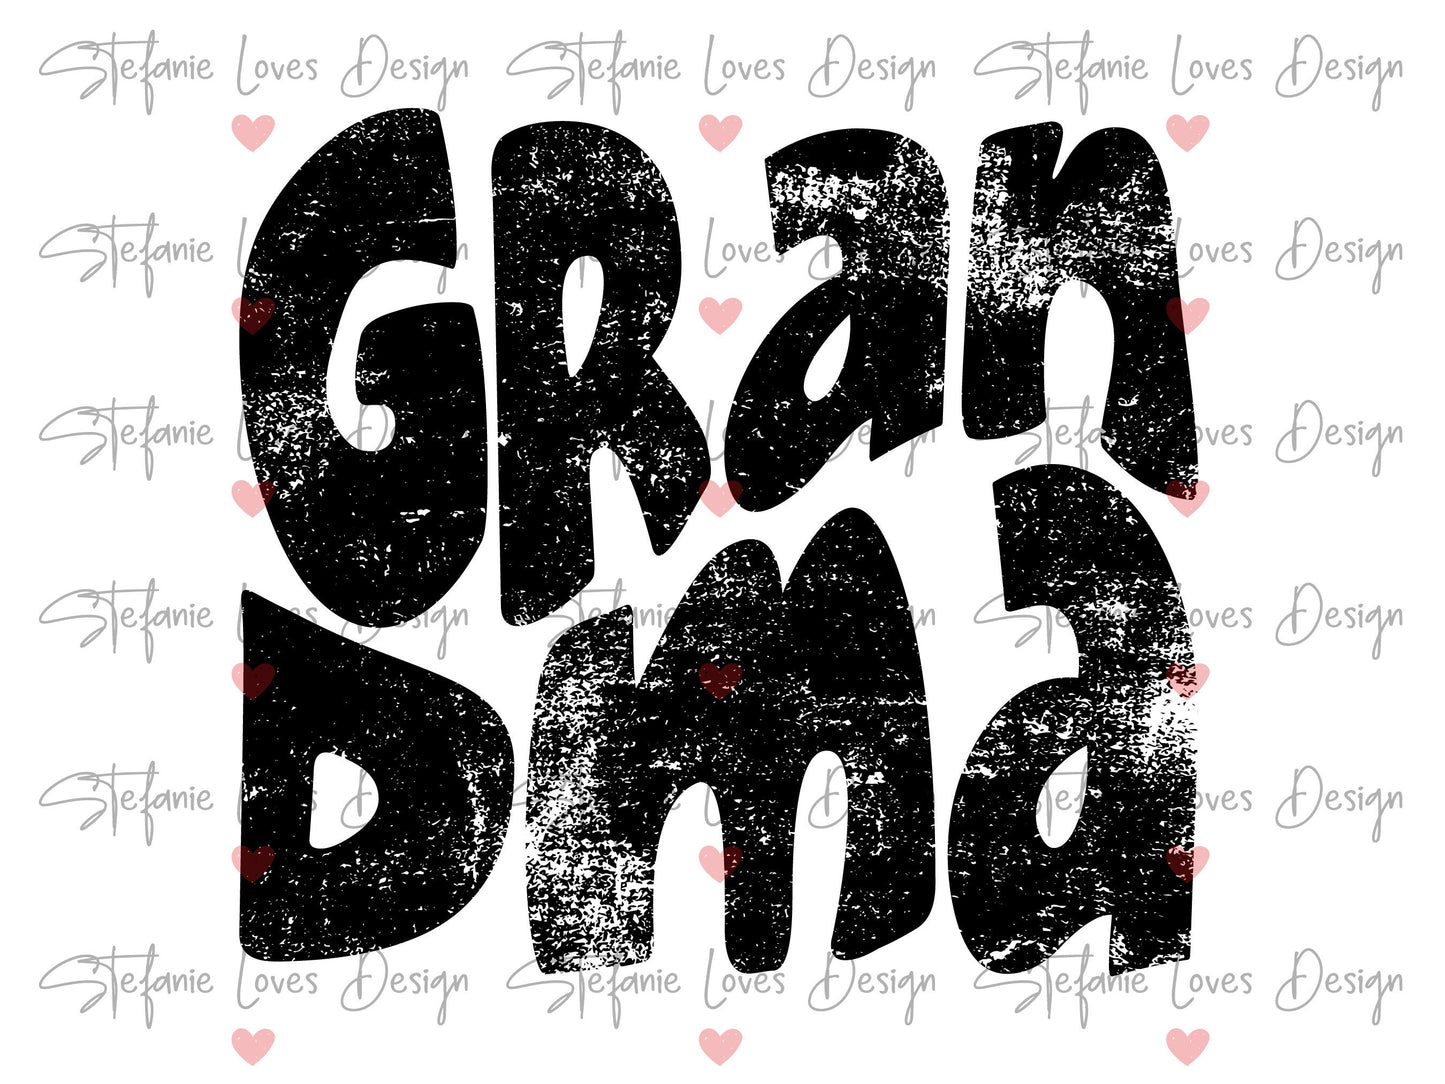 Grandma png, Distressed Grandma png, Digital Design